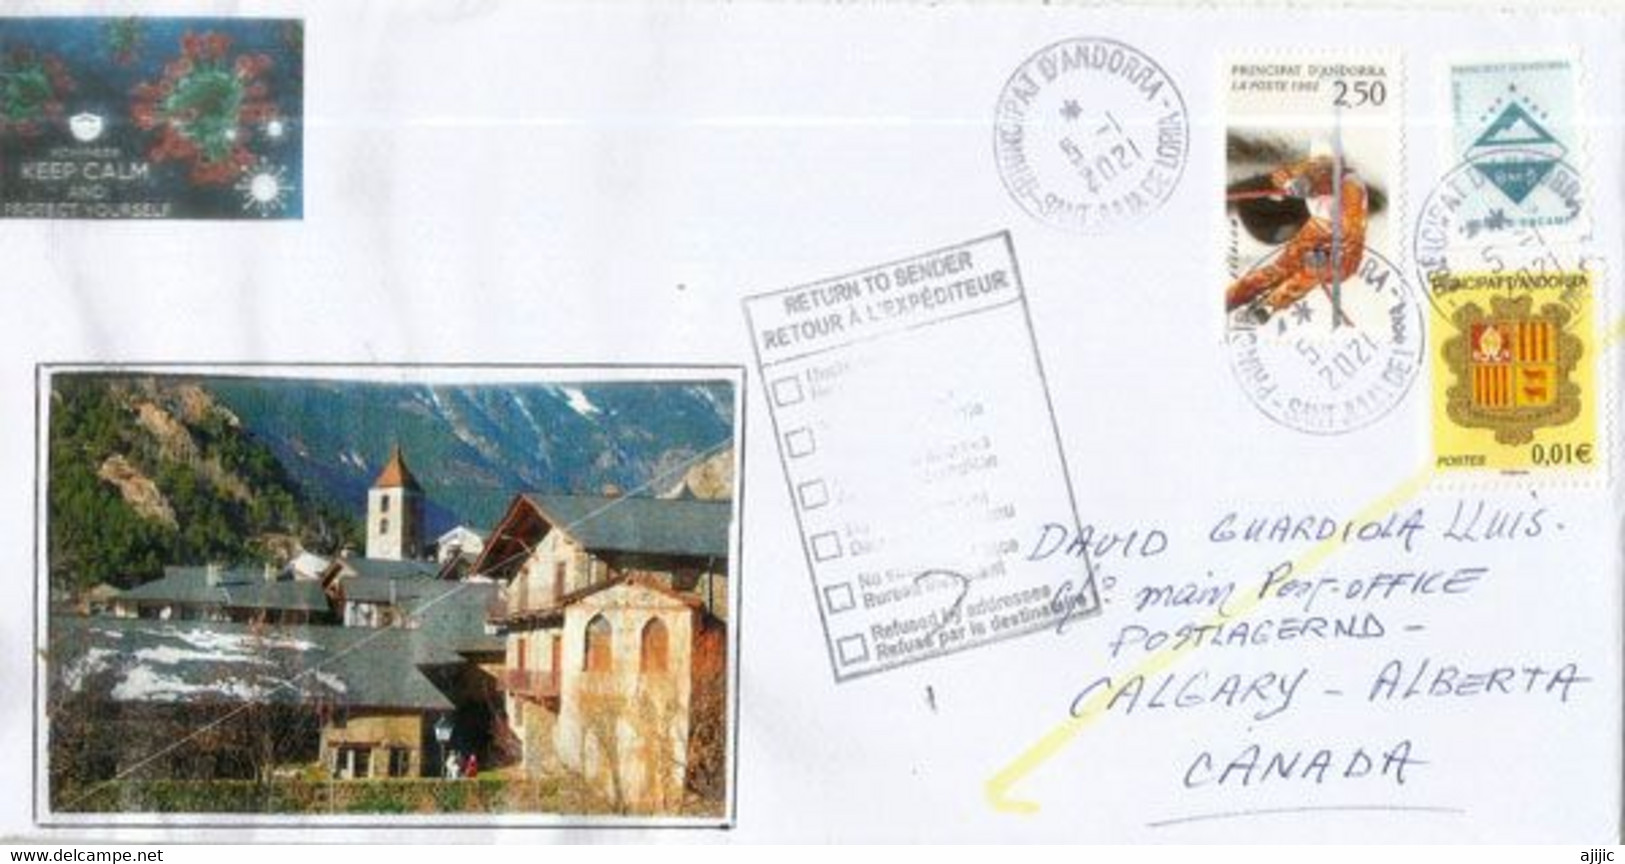 Lettre D'Andorre Adressée Au Canada Pendant Confinement Covid-19 , Return To Sender, Deux Photos - Briefe U. Dokumente